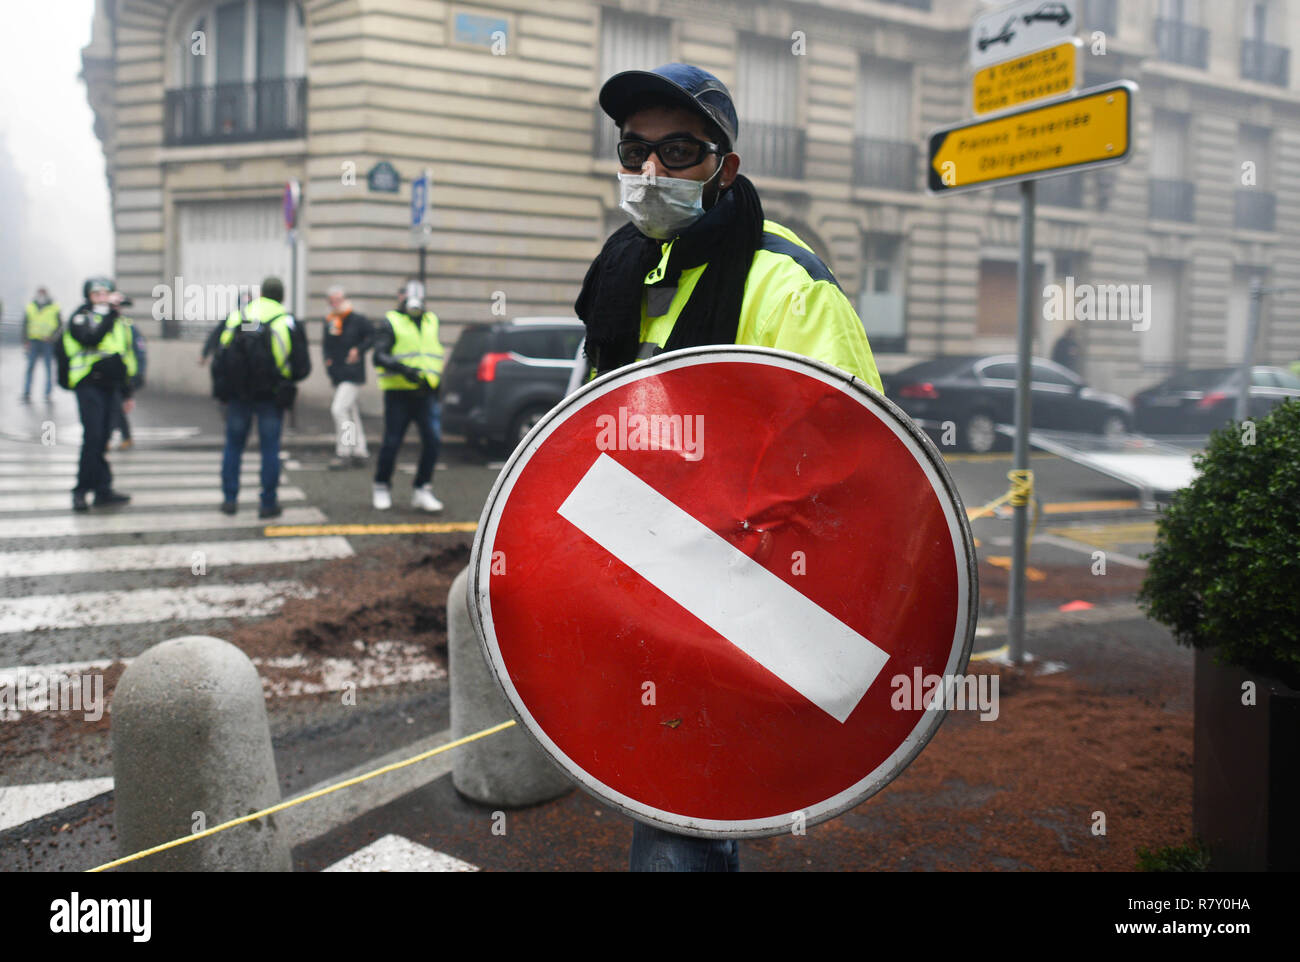 Décembre 01, 2018 - Paris, France : un gilet jaune manifestant utilise un  panneau routier comme un bouclier dans une rue près de l'avenue des  Champs-Élysées, où plusieurs véhicules ont été incendiés.